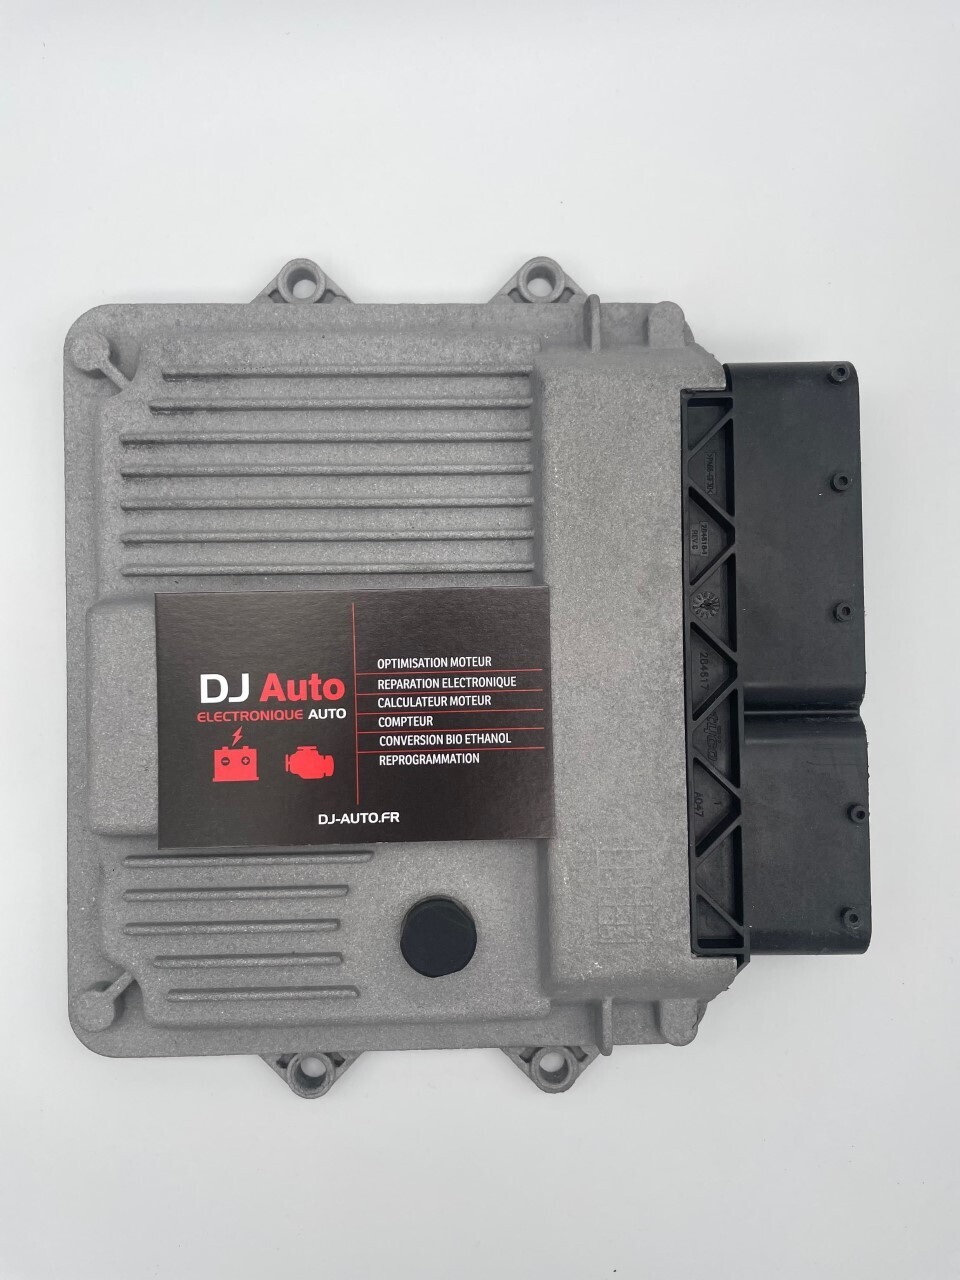 DJ-Auto│Opel Calculateur moteur MJD 603.SA 55573953 QU - DJ-Auto.fr  Electronique Auto│Réparation Calculateur Moteur, Habitacle